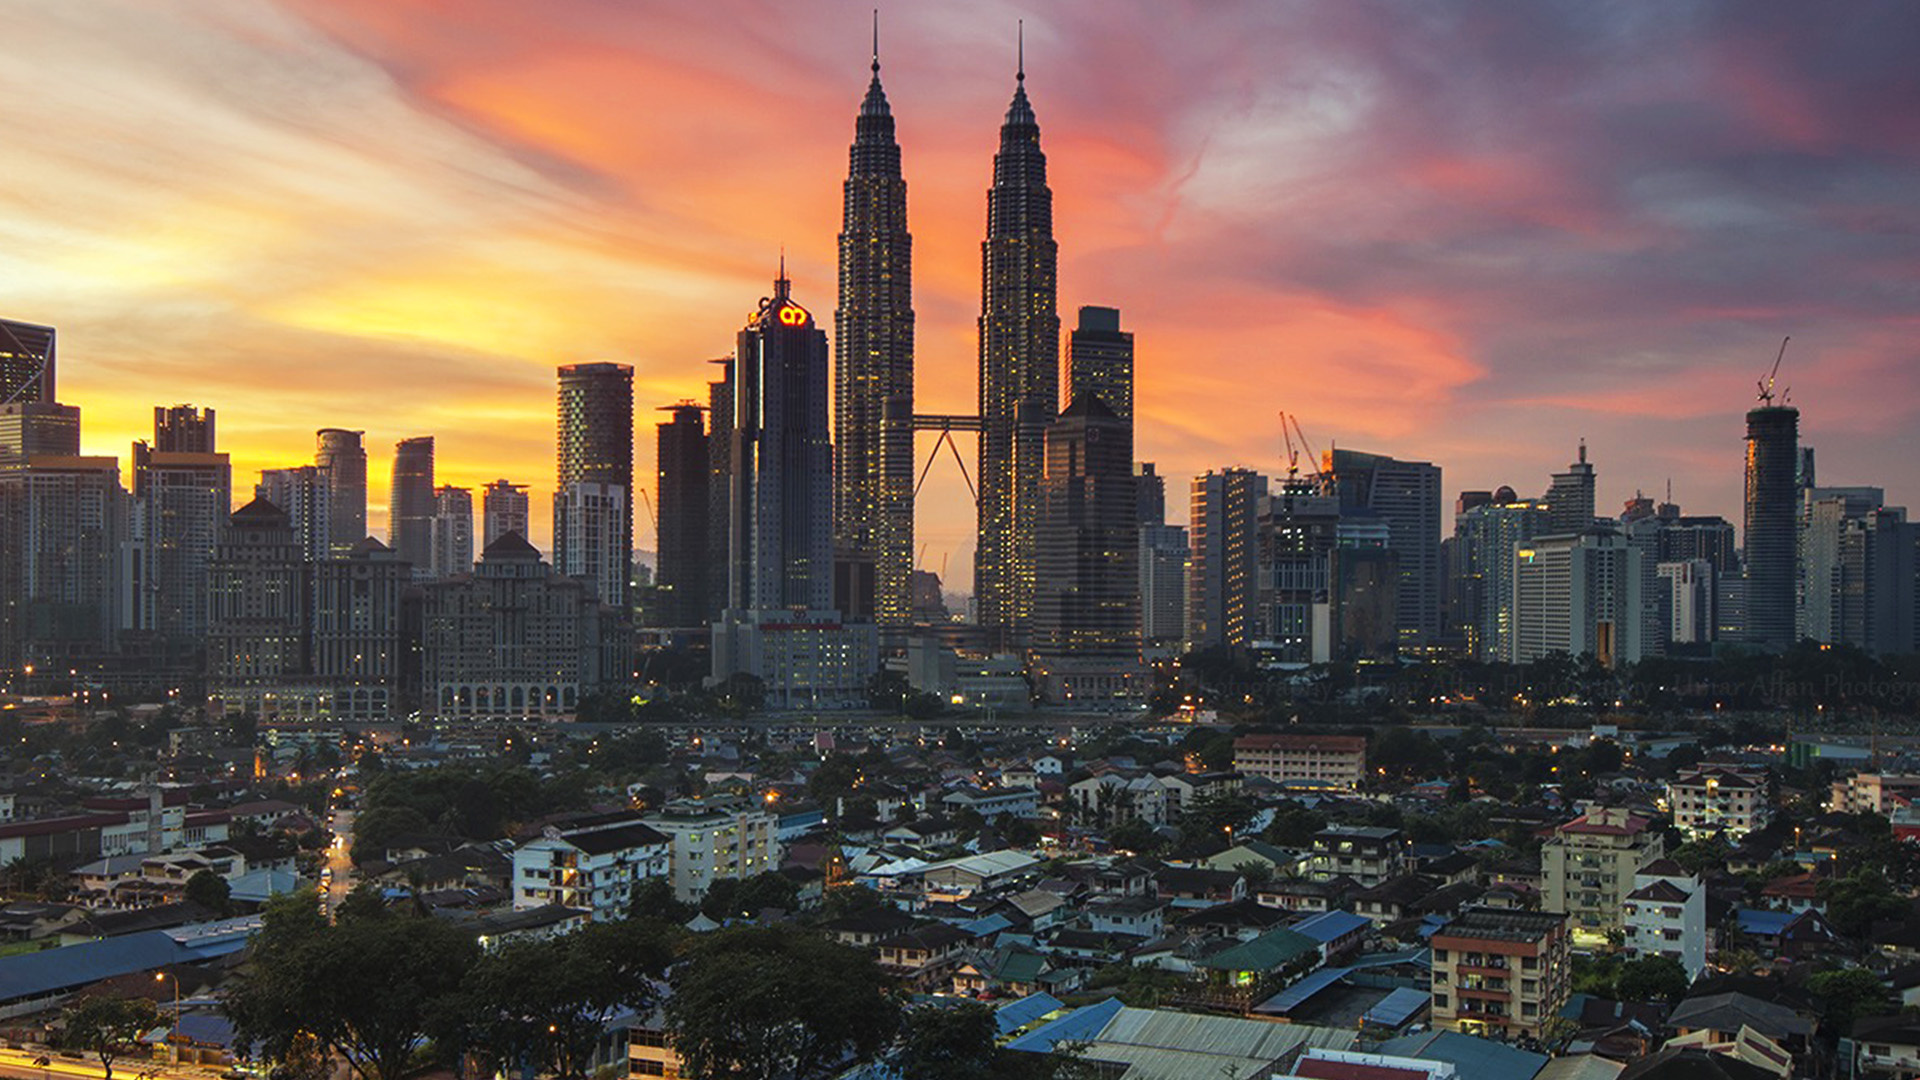 Petronas Twin Towers, NE02, Kuala Lumpur, City wallpaper, 1920x1080 Full HD Desktop